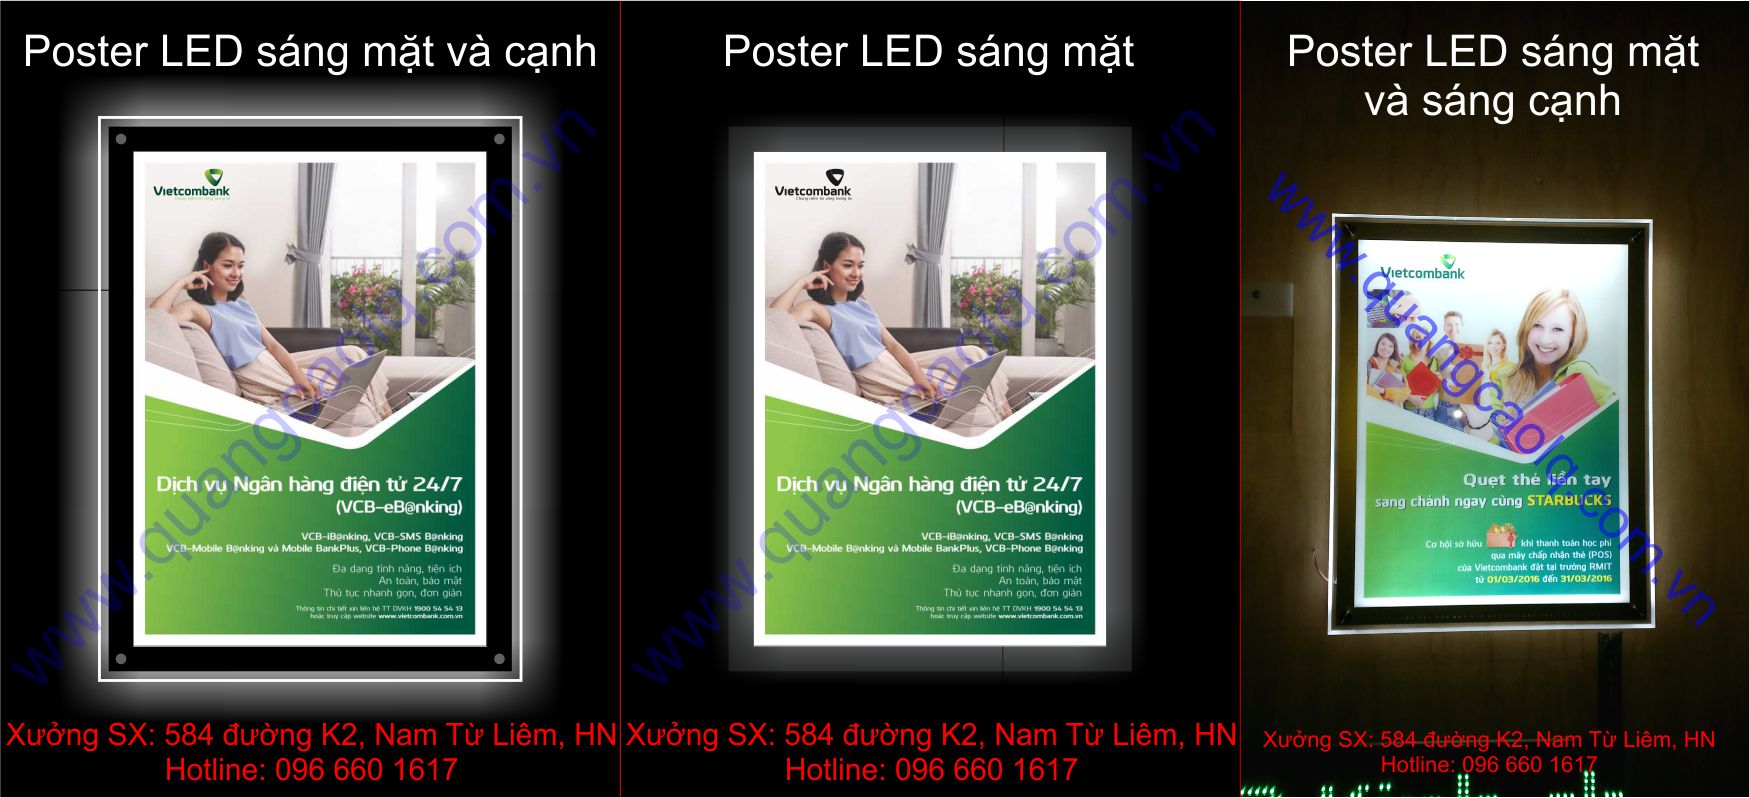 Poster LED